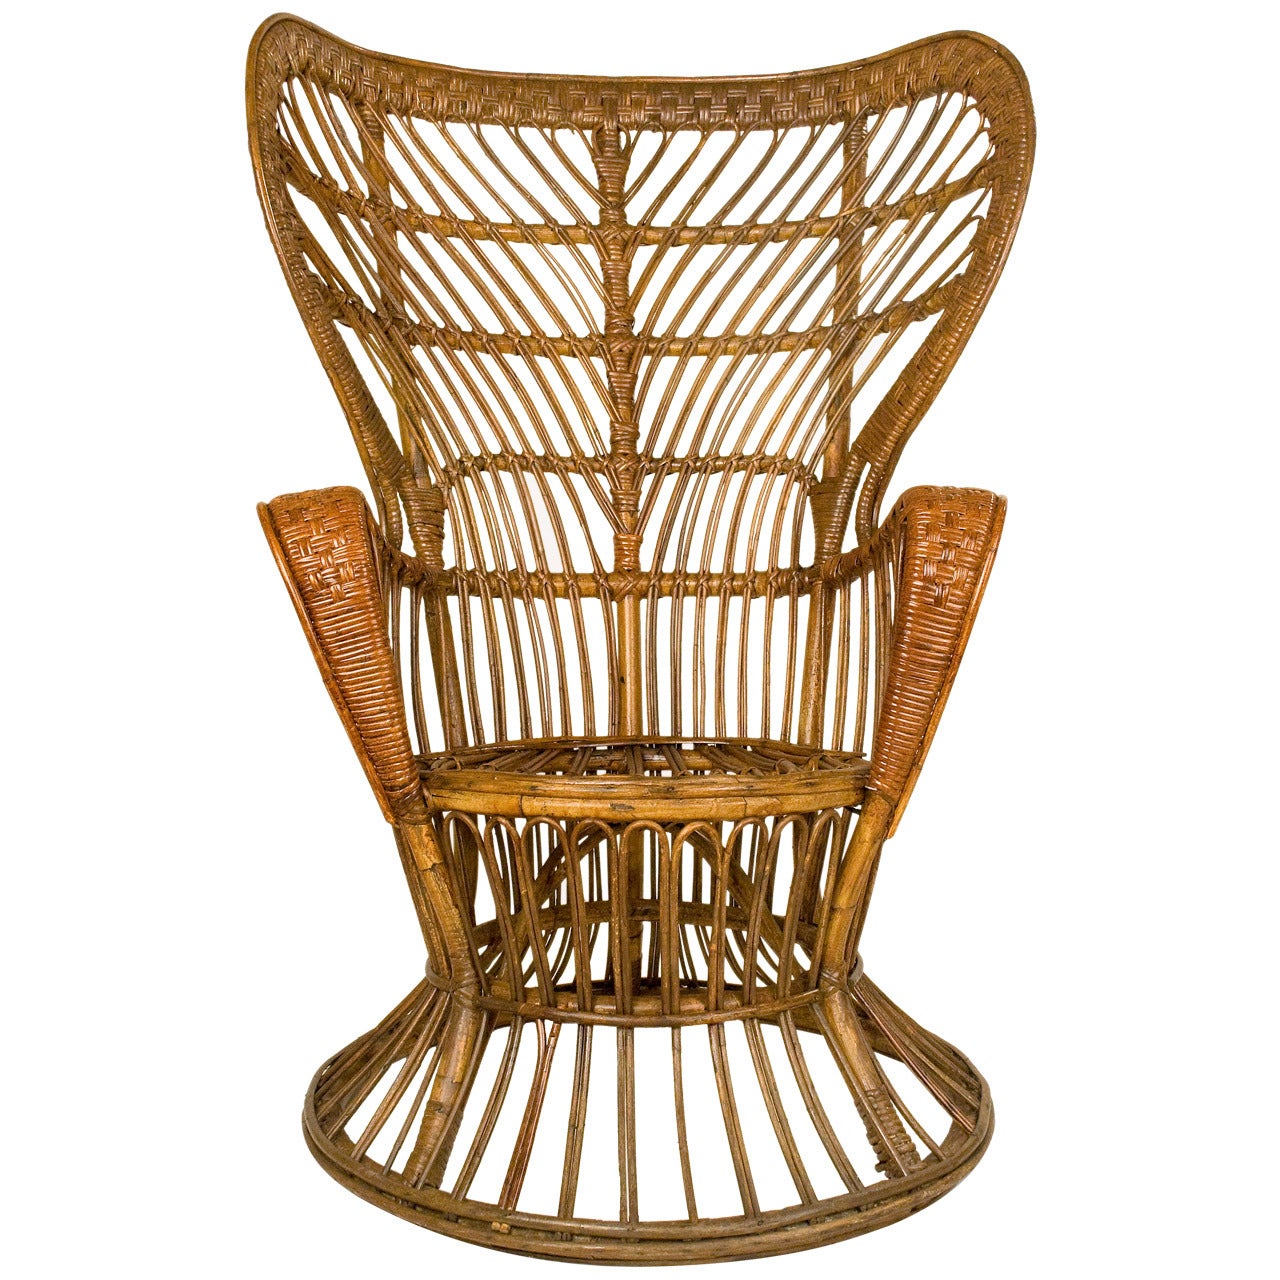 Carminati "Conte Biancomo" Wicker Chair, circa 1950, Italy